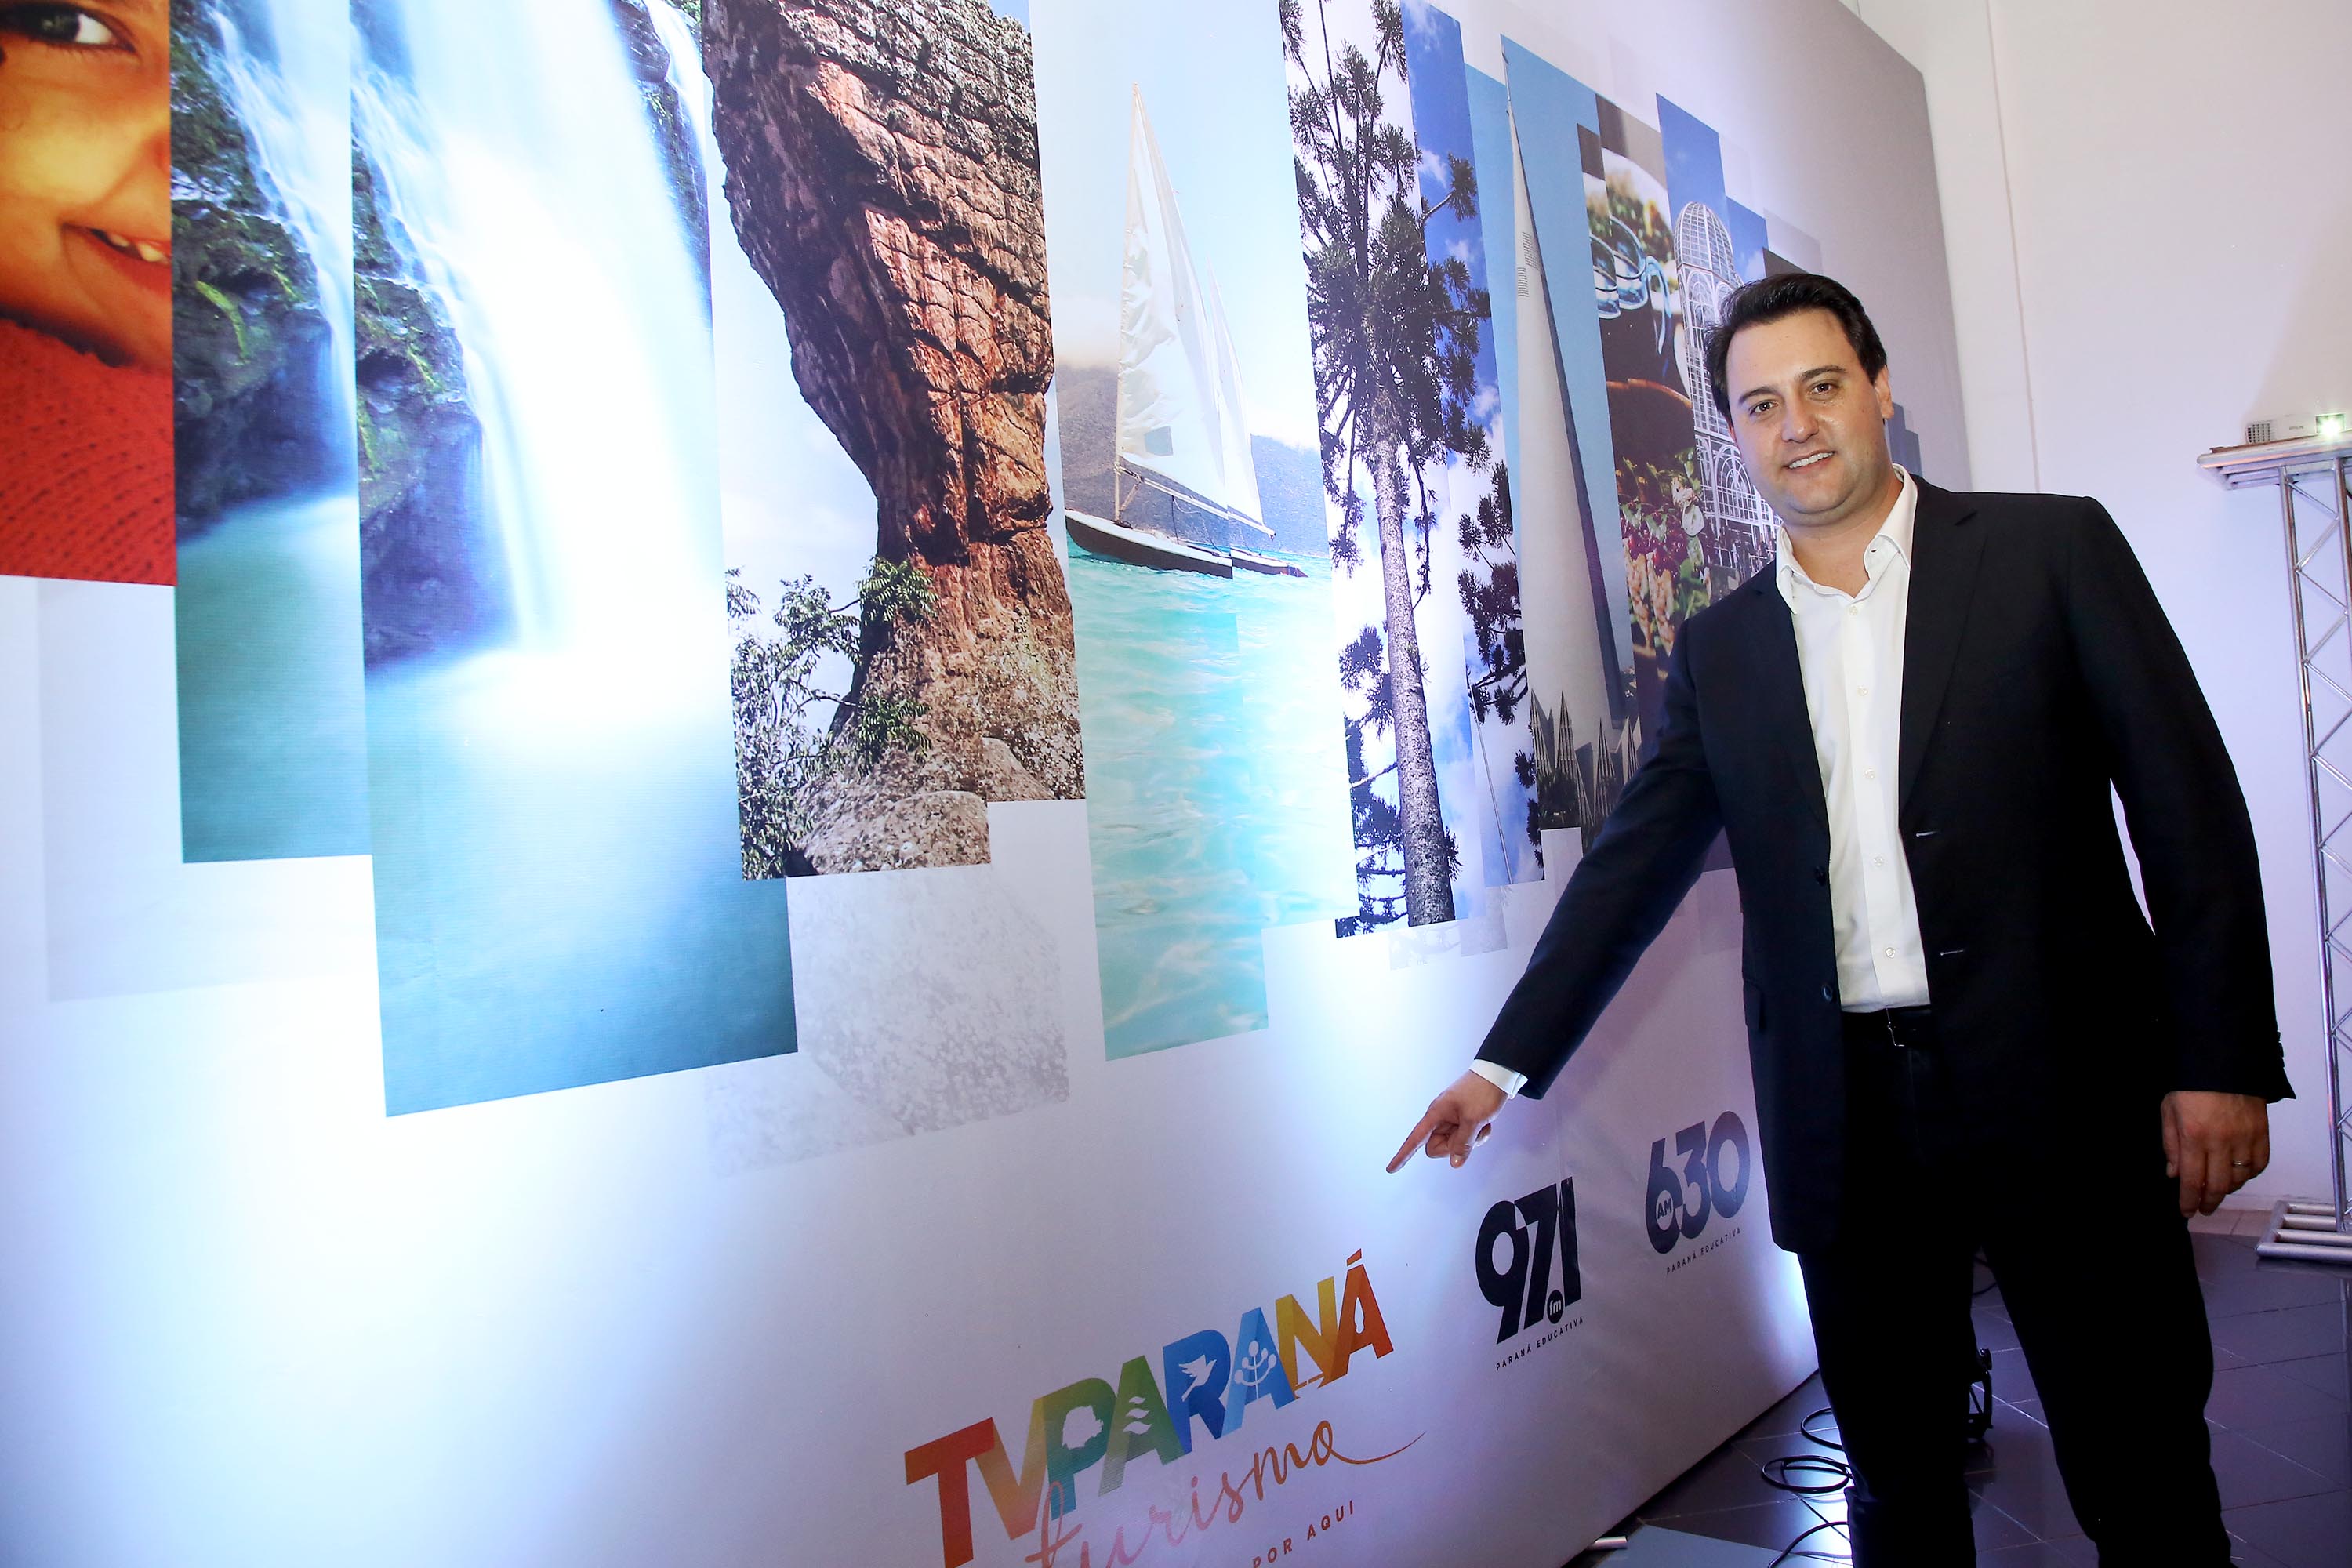 Governador lança a TV Paraná Turismo